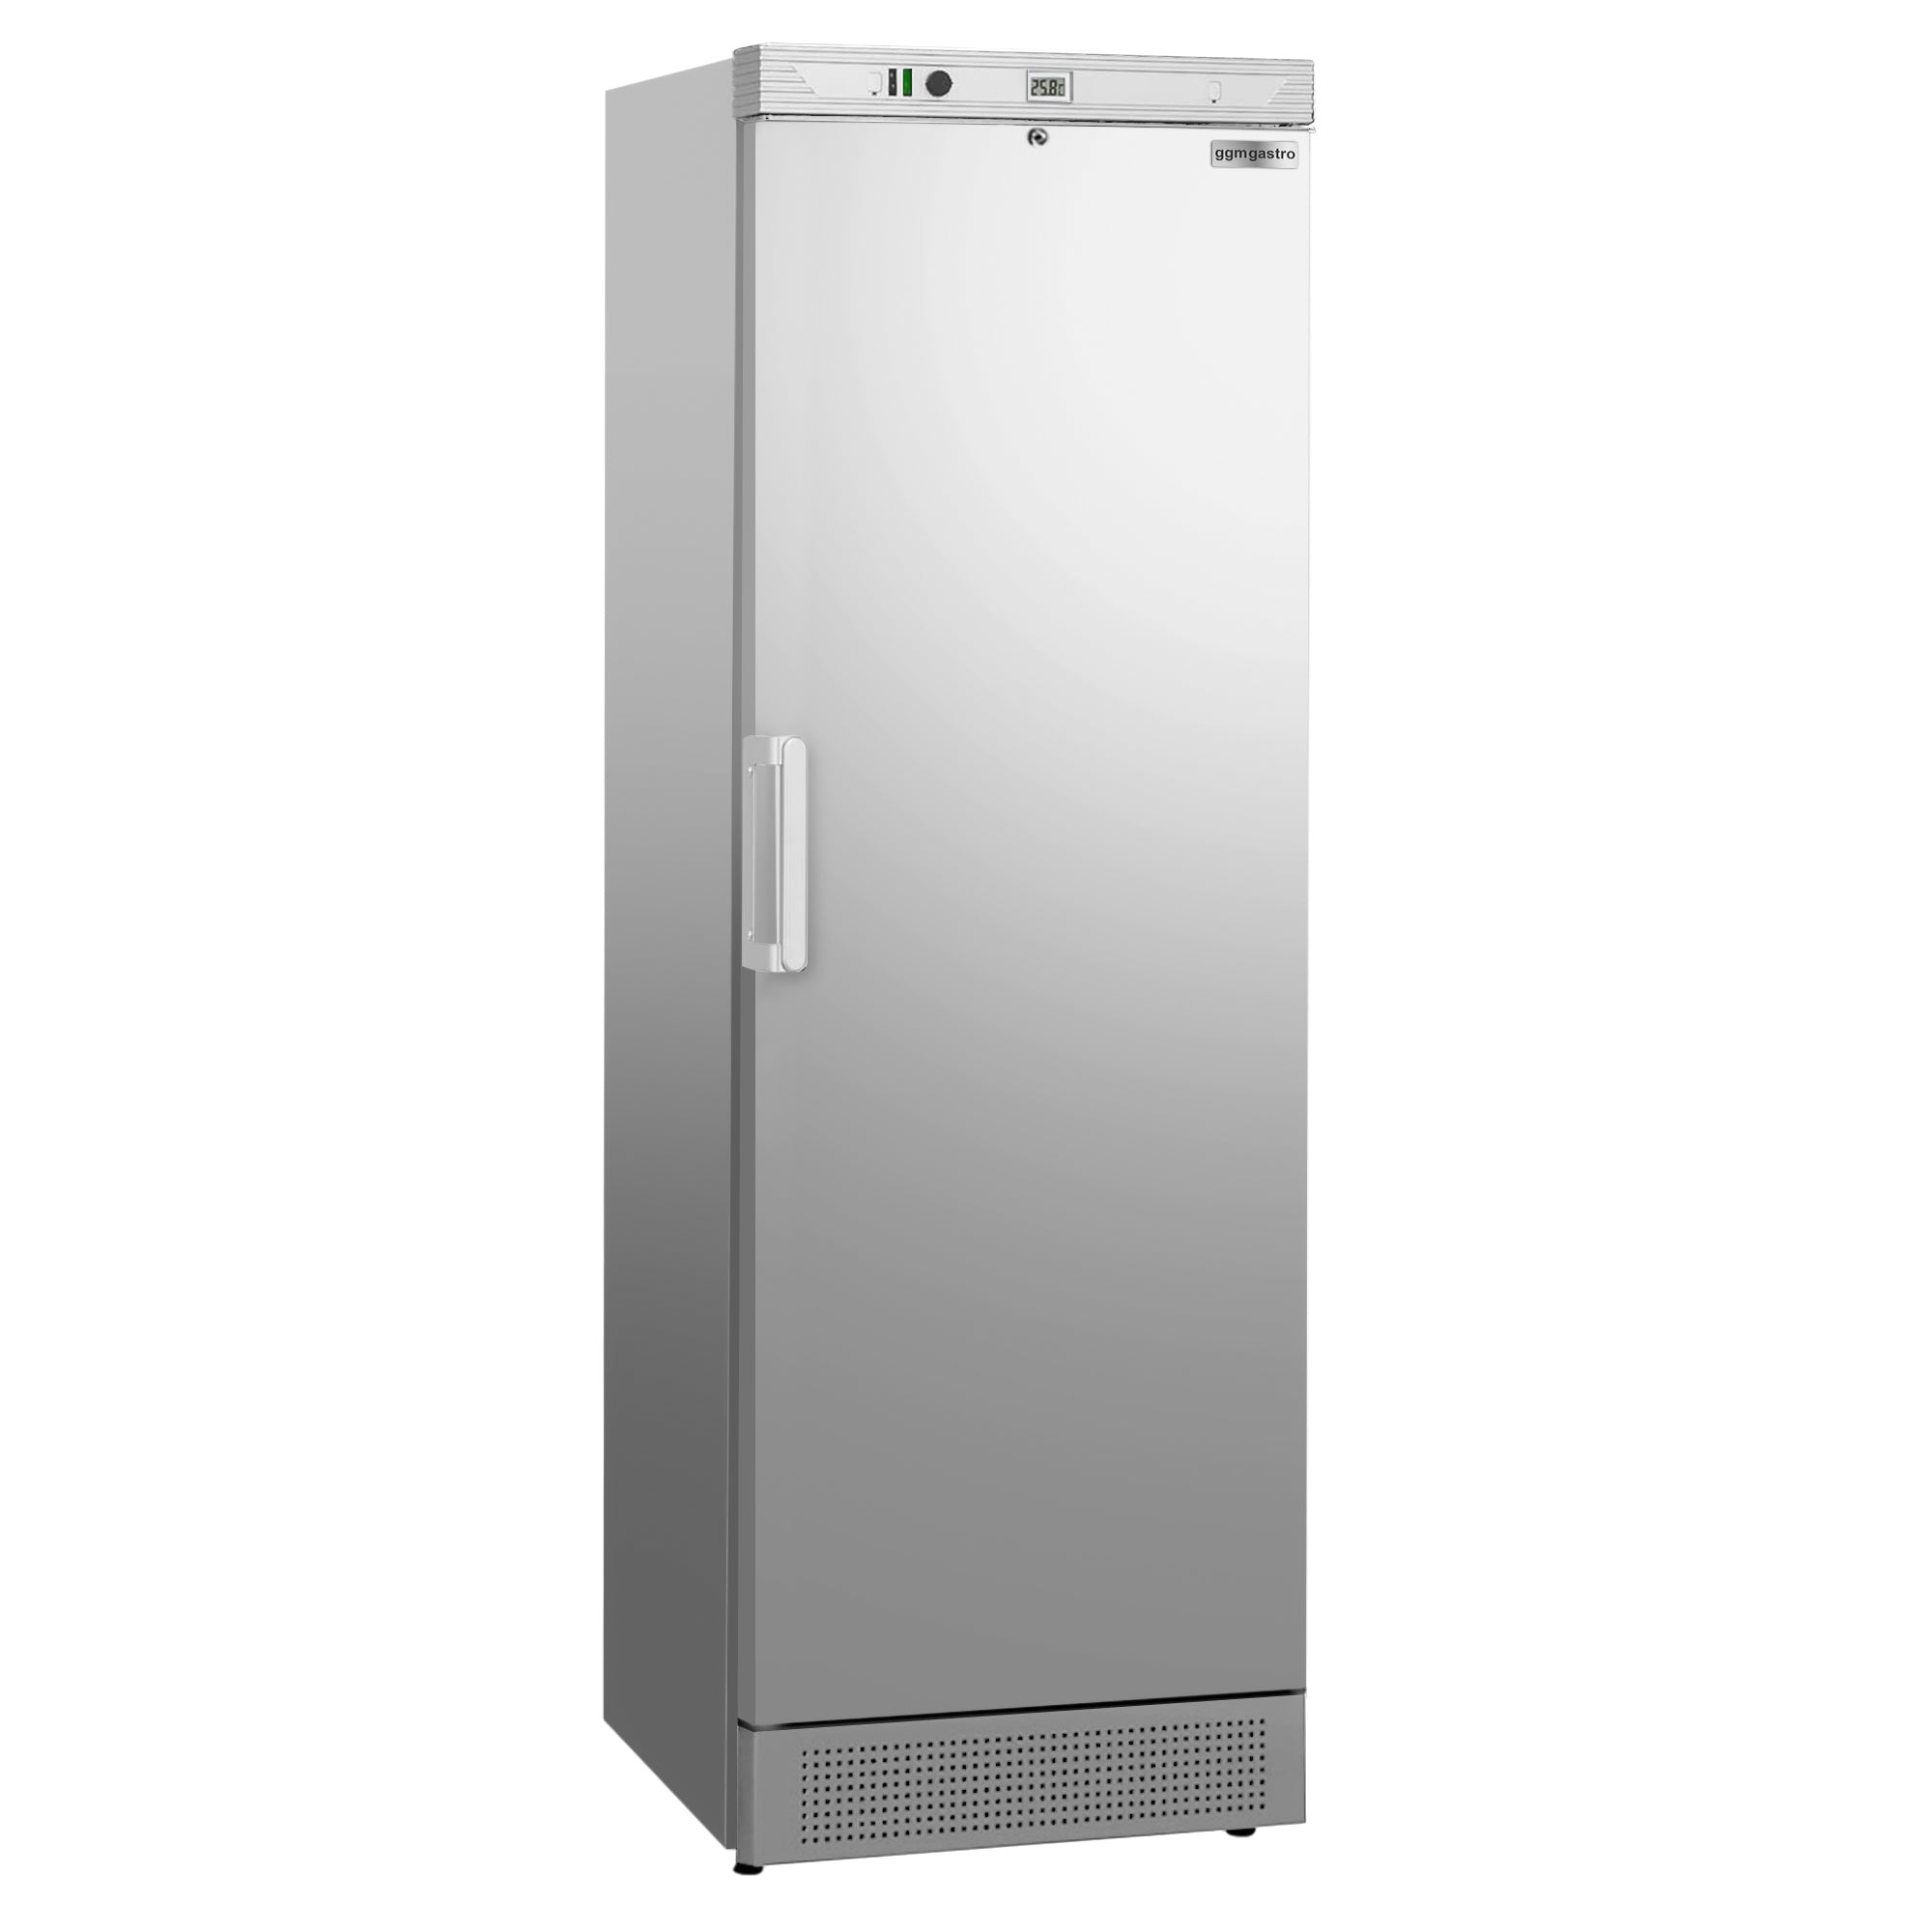 Oppbevaring kjøleskap - 0,59 x 0,64 m - 345 liter - med 1 dør